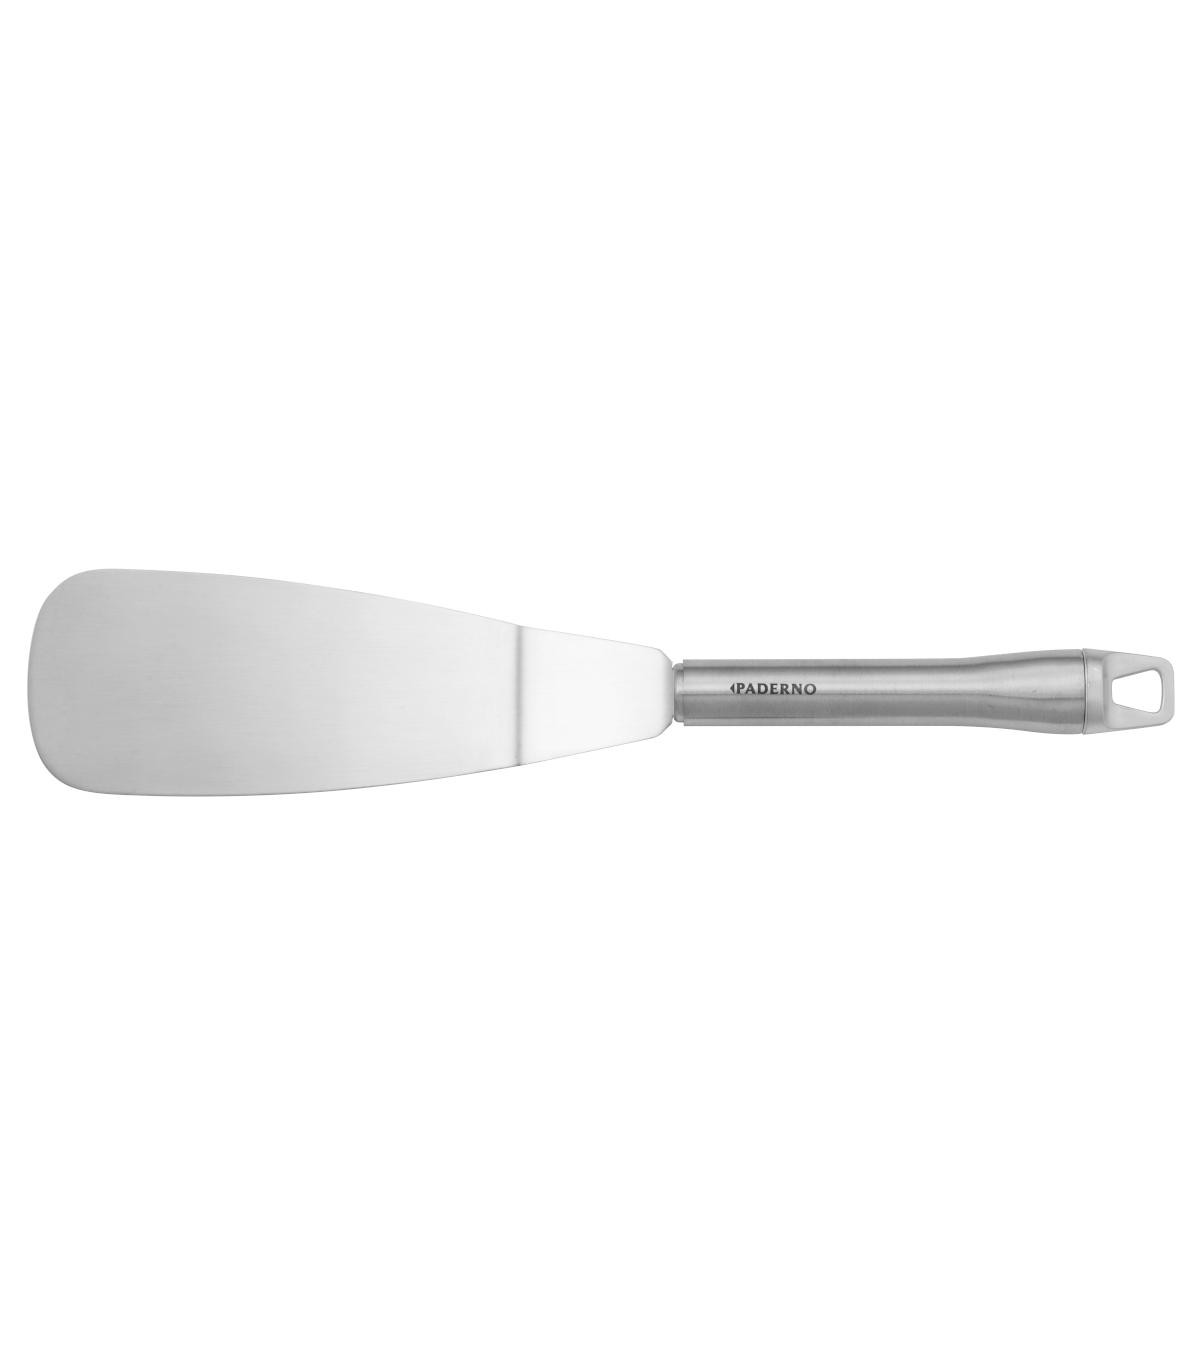 Petite spatule coudée 9 cm - Accessoires